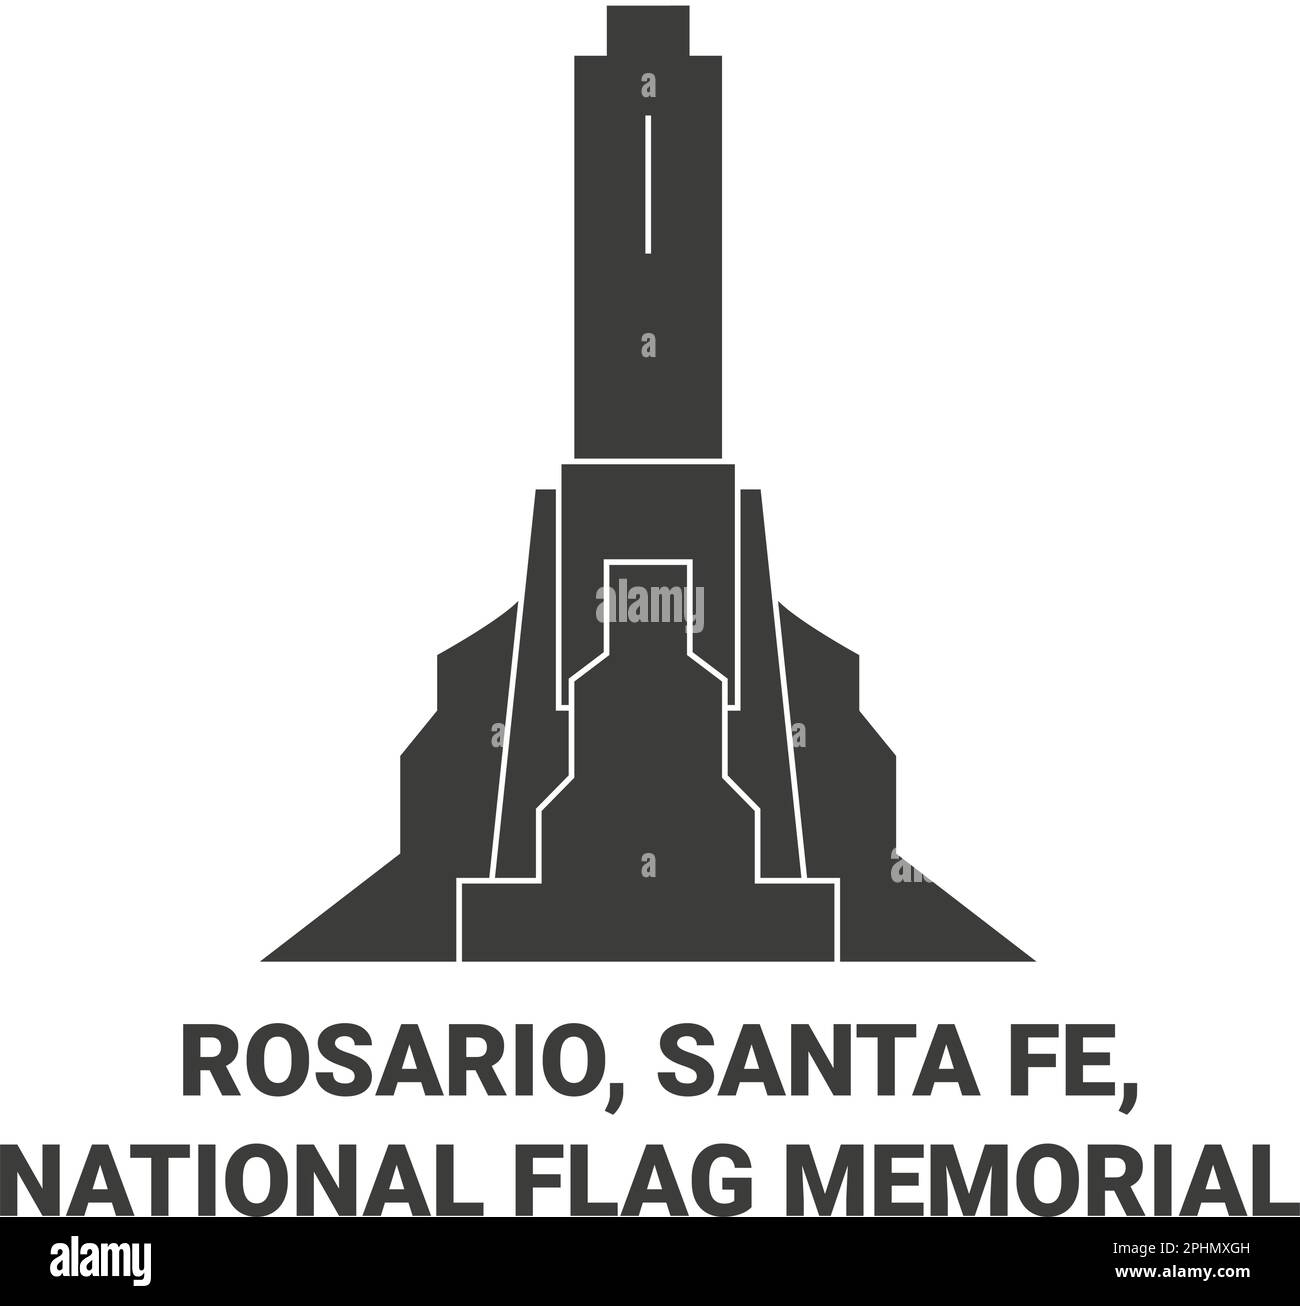 États-Unis, Rosario, Santa Fe, National Flag Memorial Voyage repère illustration vecteur Illustration de Vecteur